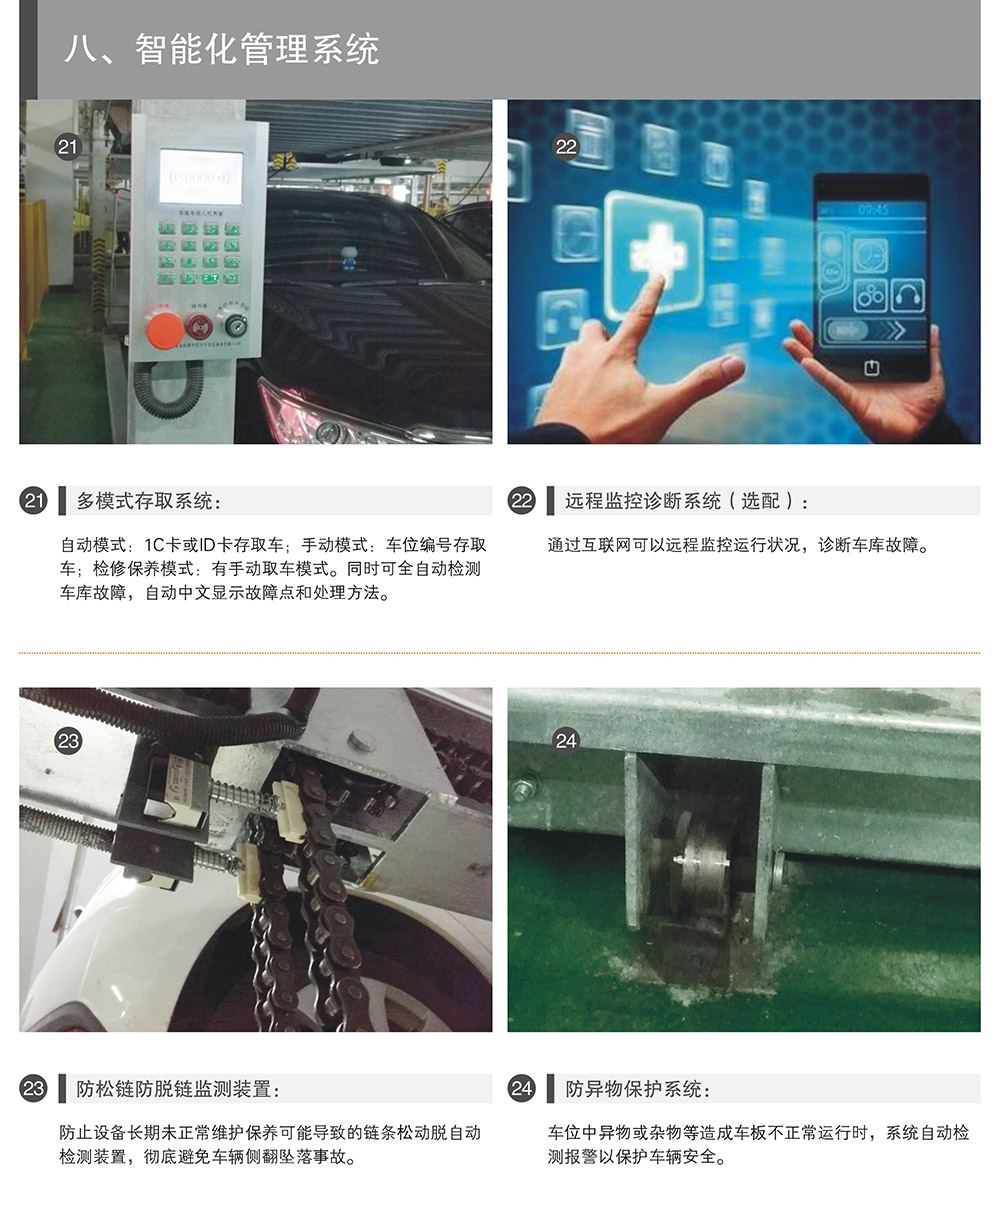 重庆PSH升降横移立体停车设备智能化管理系统.jpg